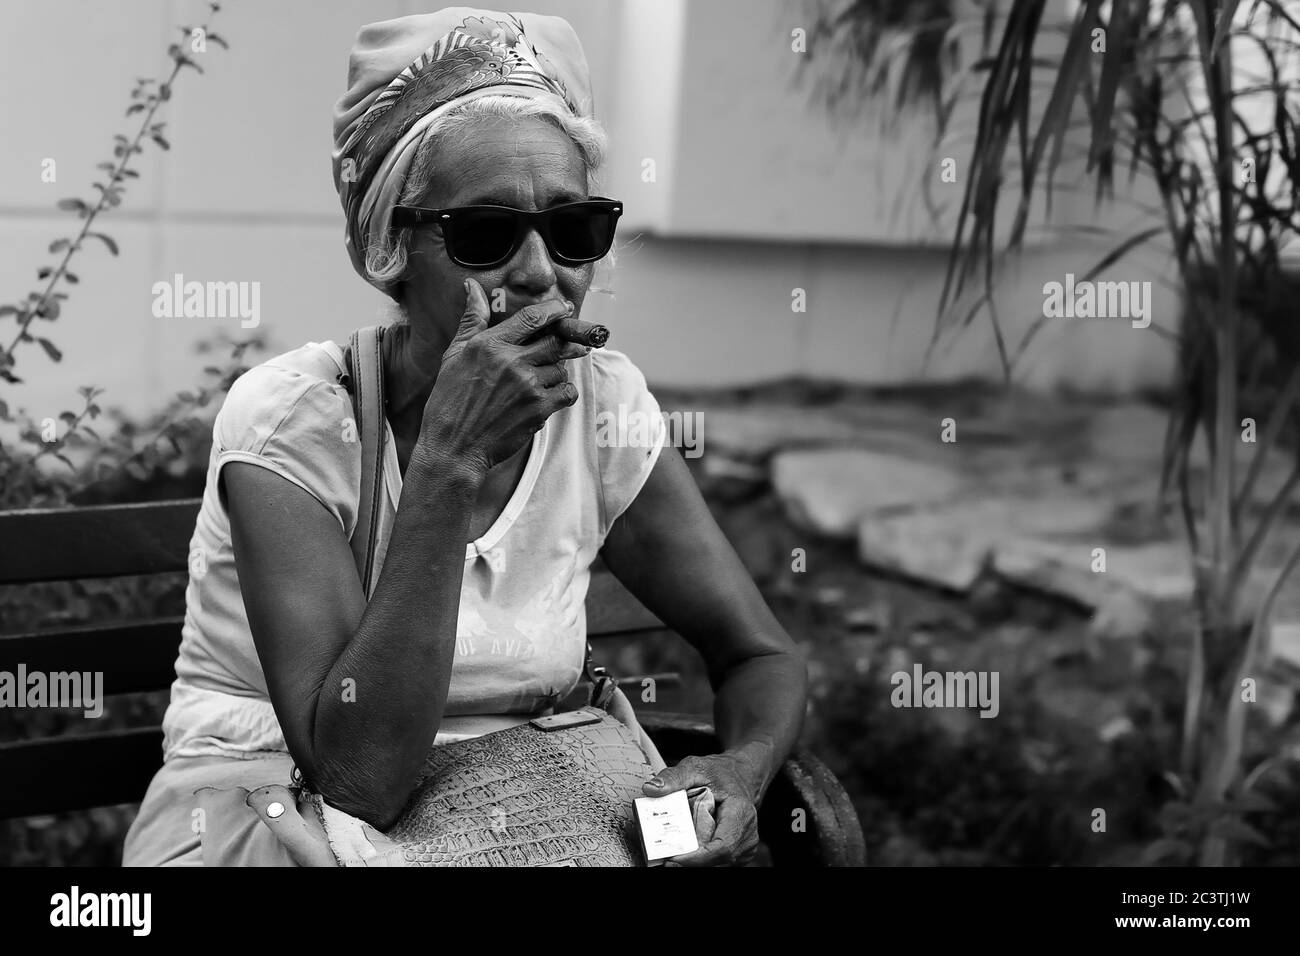 SANTIAGO DE CUBA, CUBA - 29 NOVEMBRE: Il cubano fuma il sigaro a Santiago de Cuba il 29 novembre 2016 Foto Stock